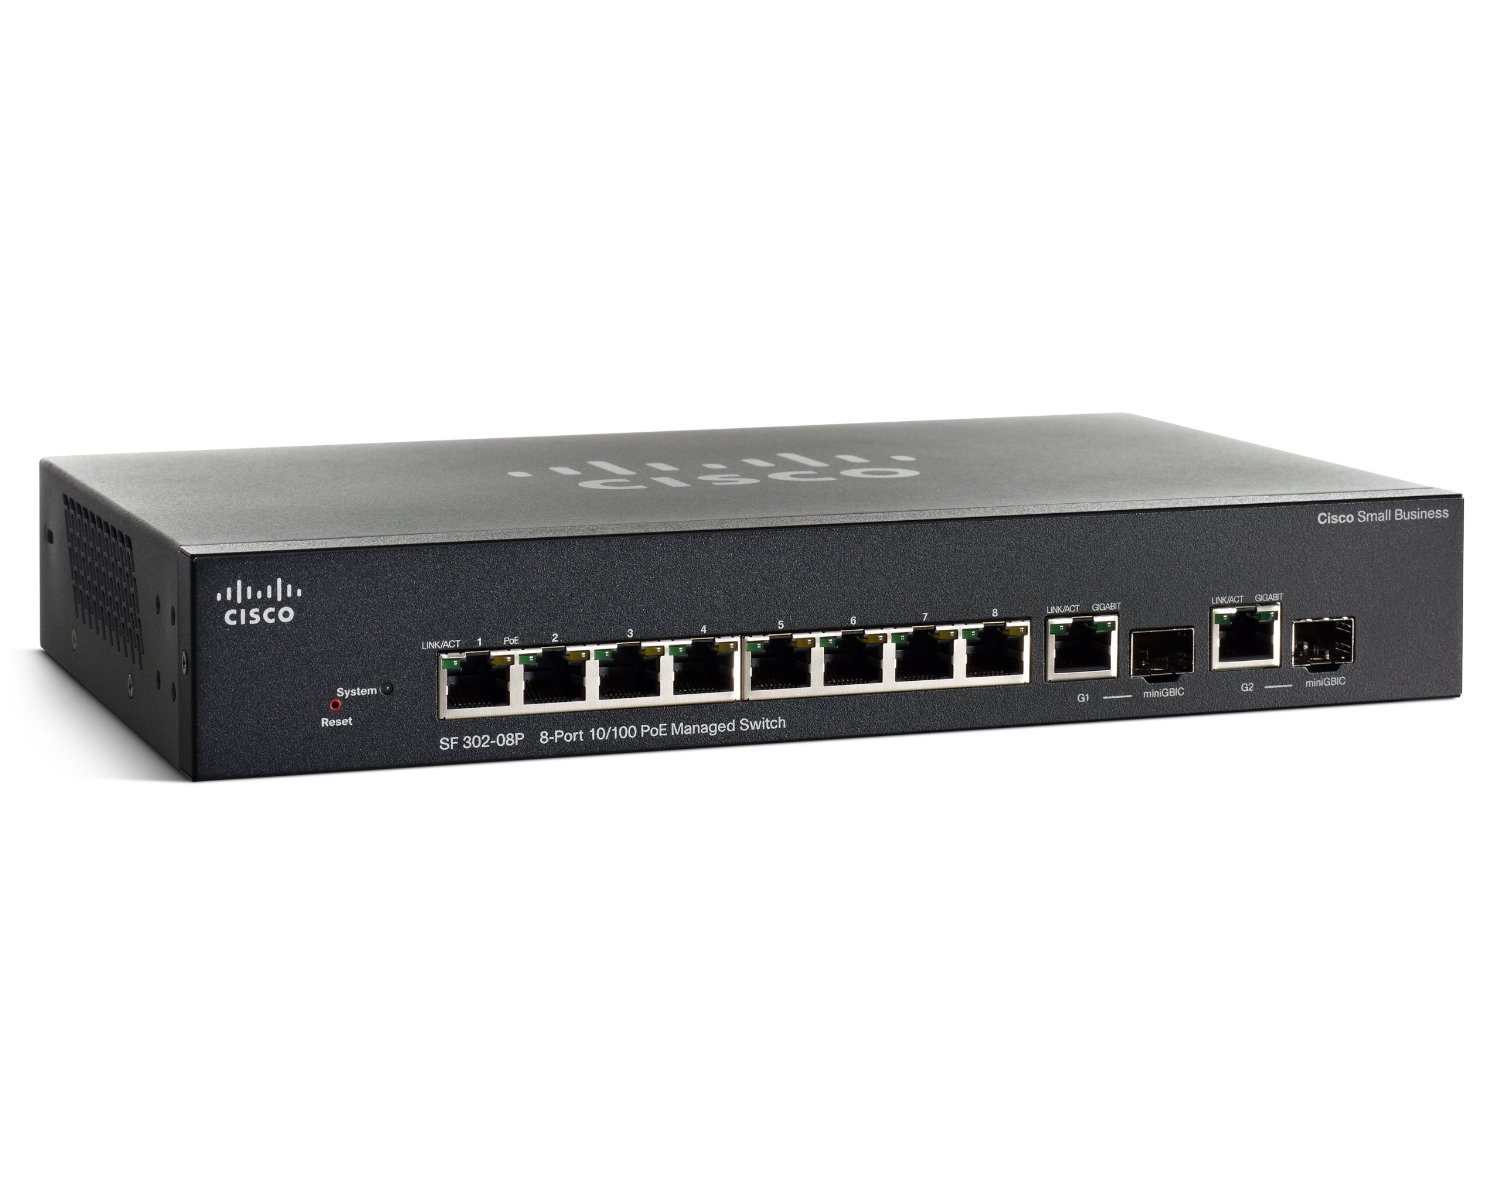 Cisco SF302-08P 8-Port 10/100 PoE Managed Switch with Gigabit Uplinks (SRW208P-K9-NA)